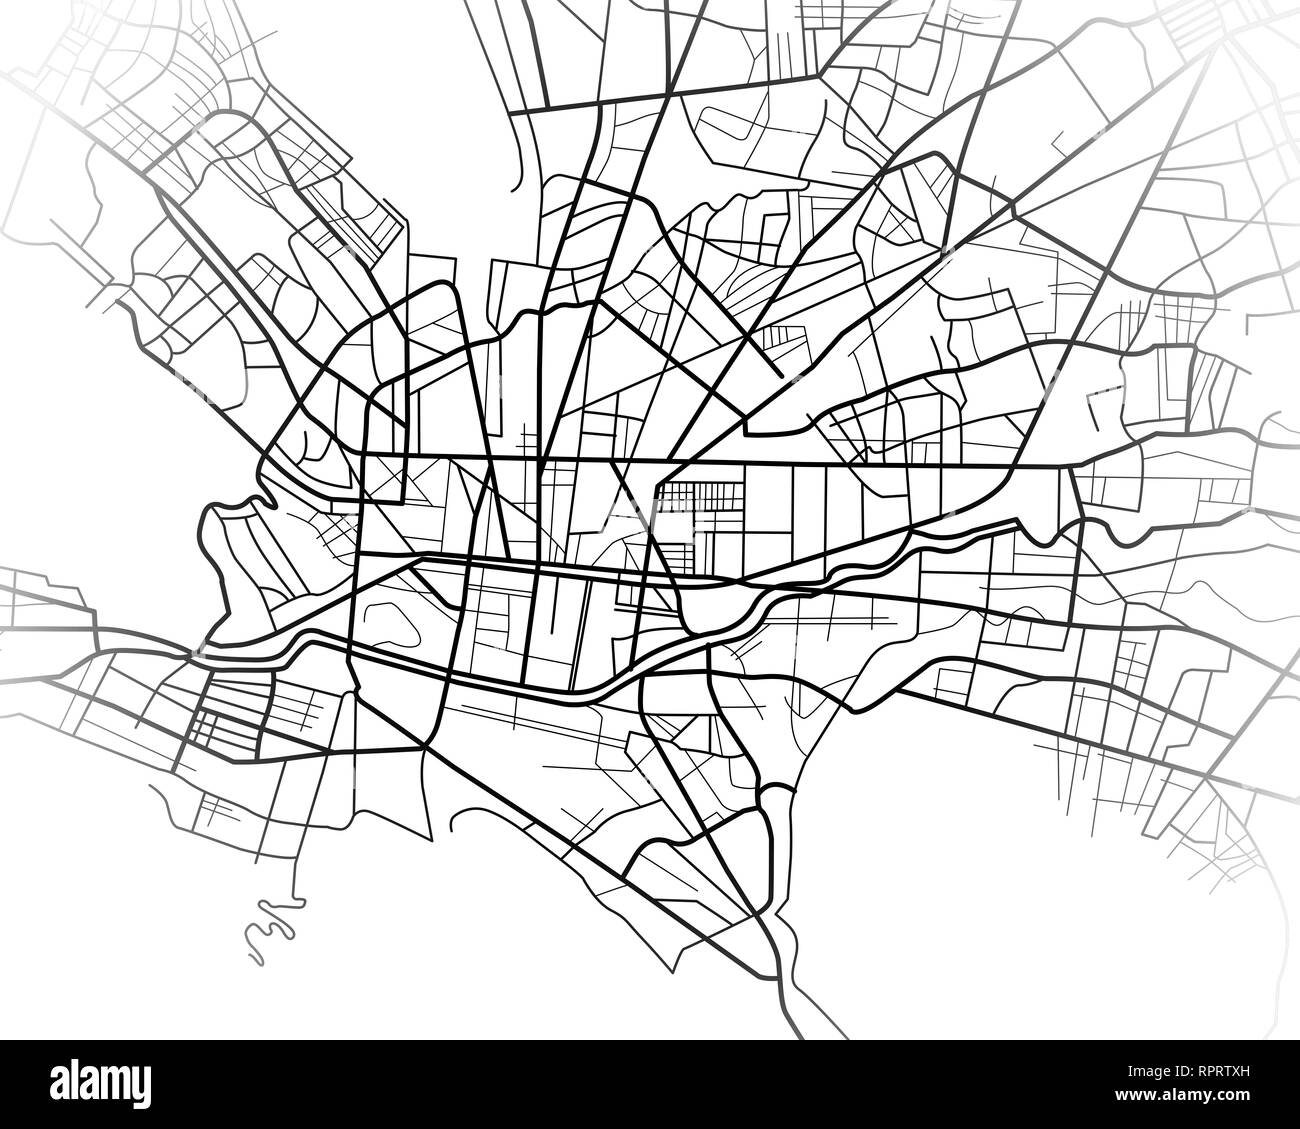 Illustration numérique ou un dessin de la carte de la ville de Monterrey au Mexique Banque D'Images